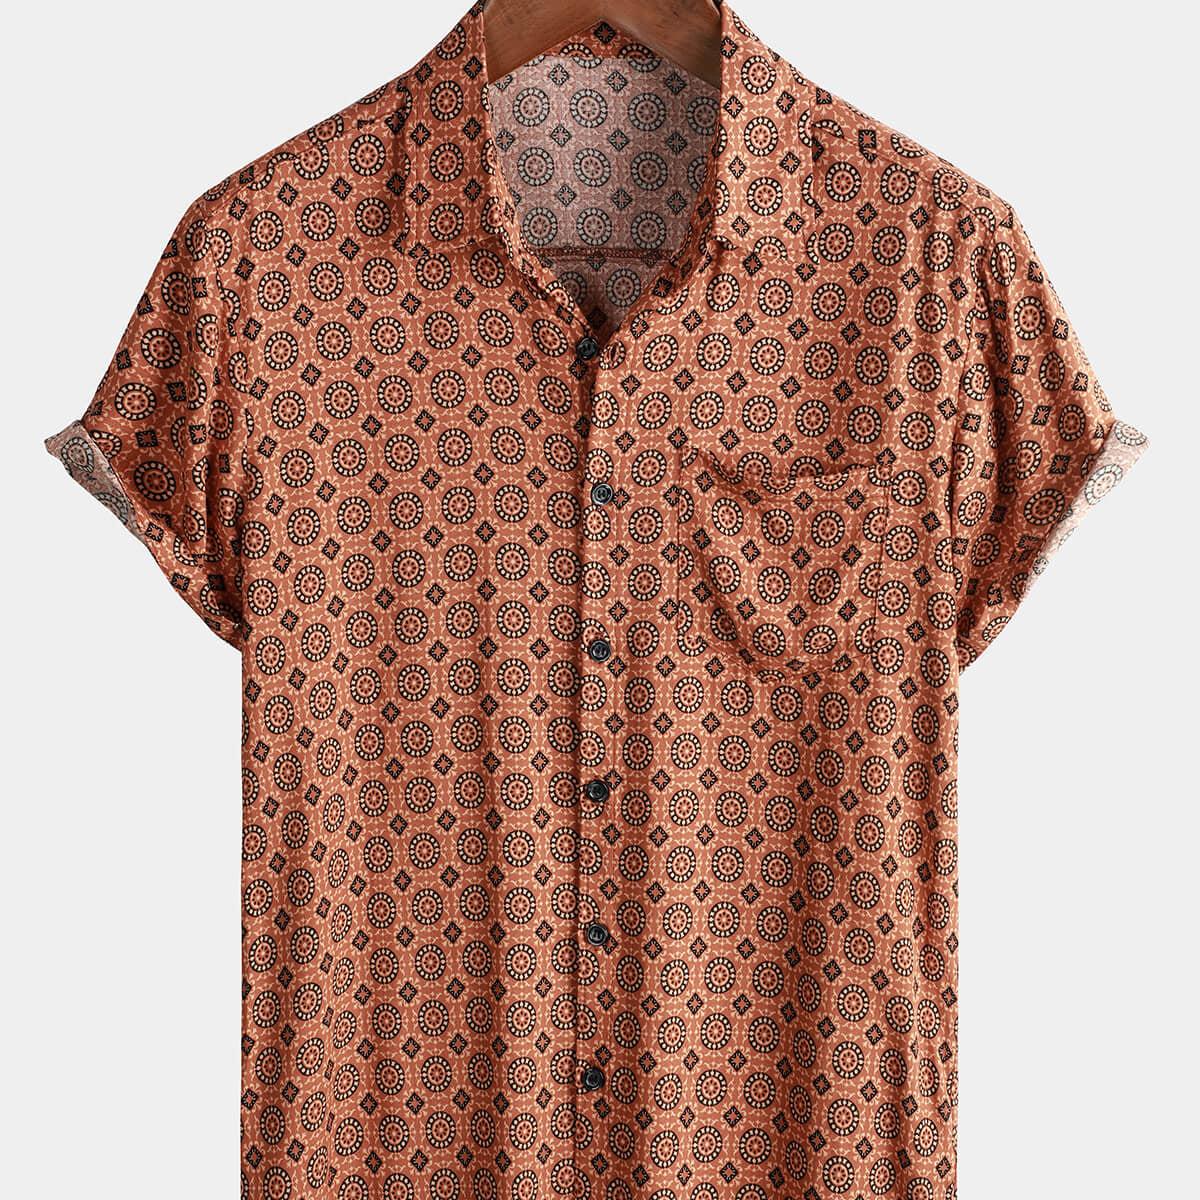 Men's Button Up Vintage Summer Beach Short Sleeve Shirt